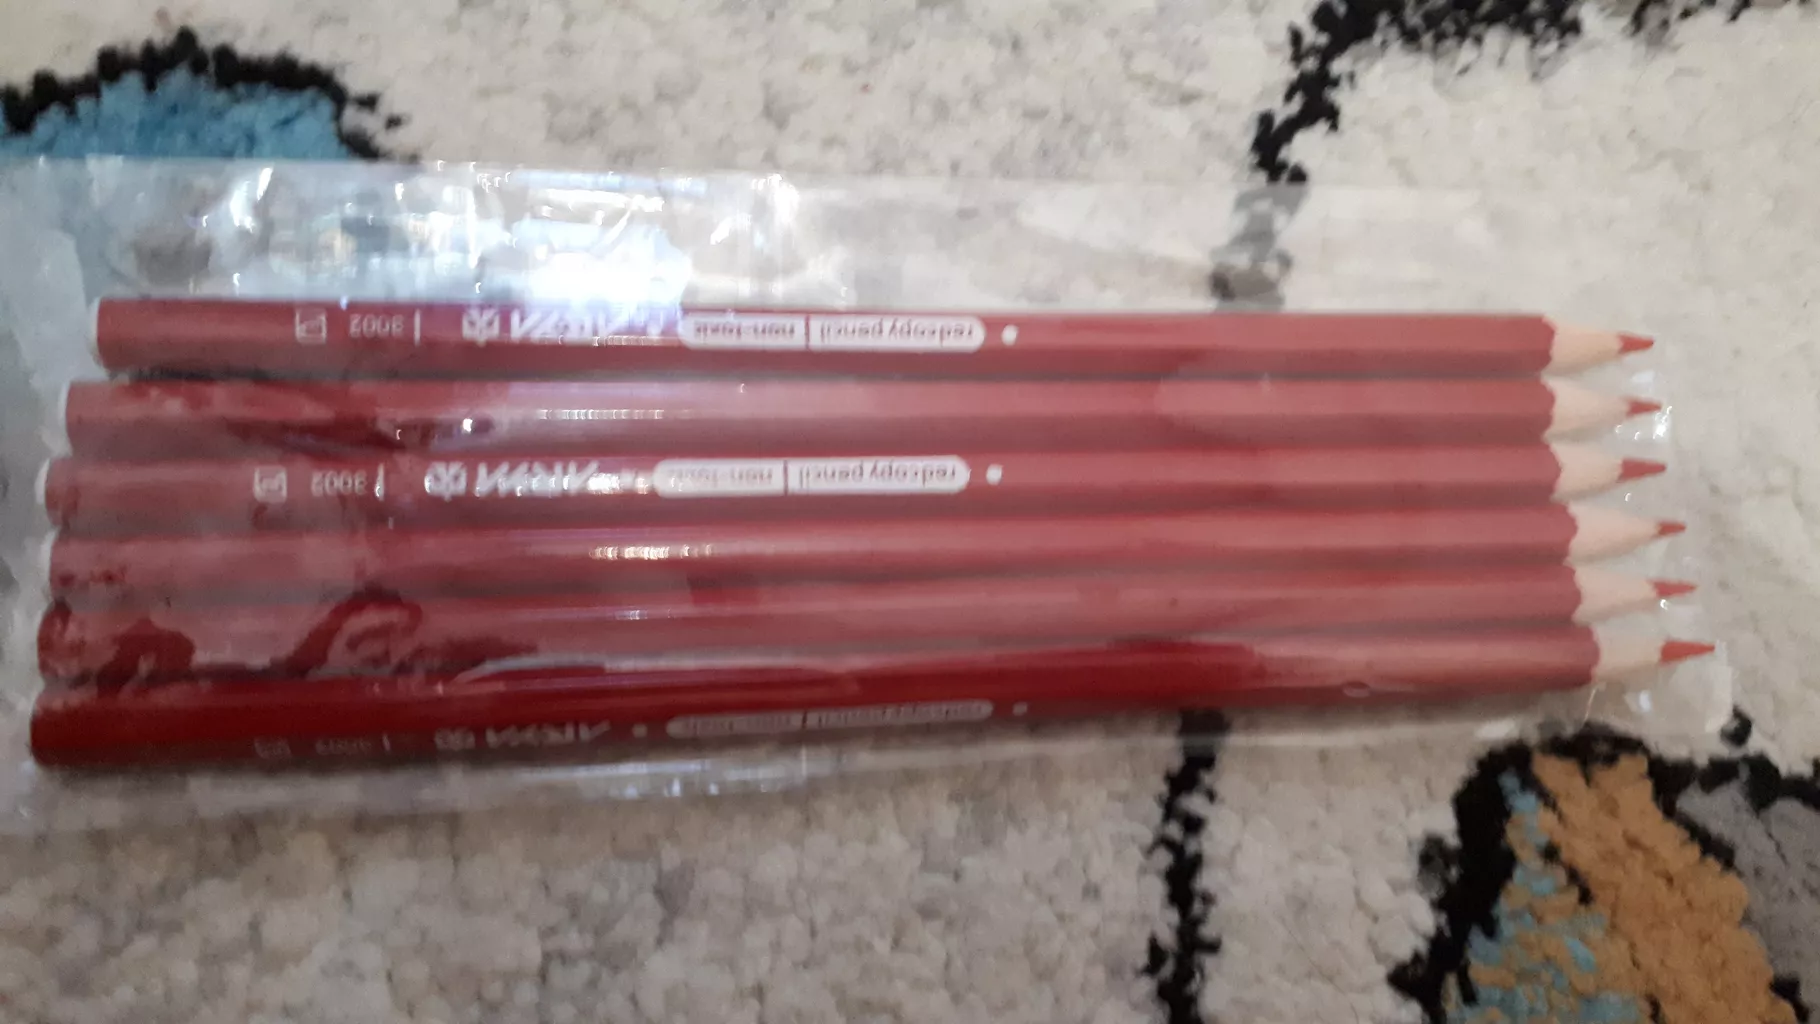 مداد قرمز آریا کد 3002 بسته 6 عددی